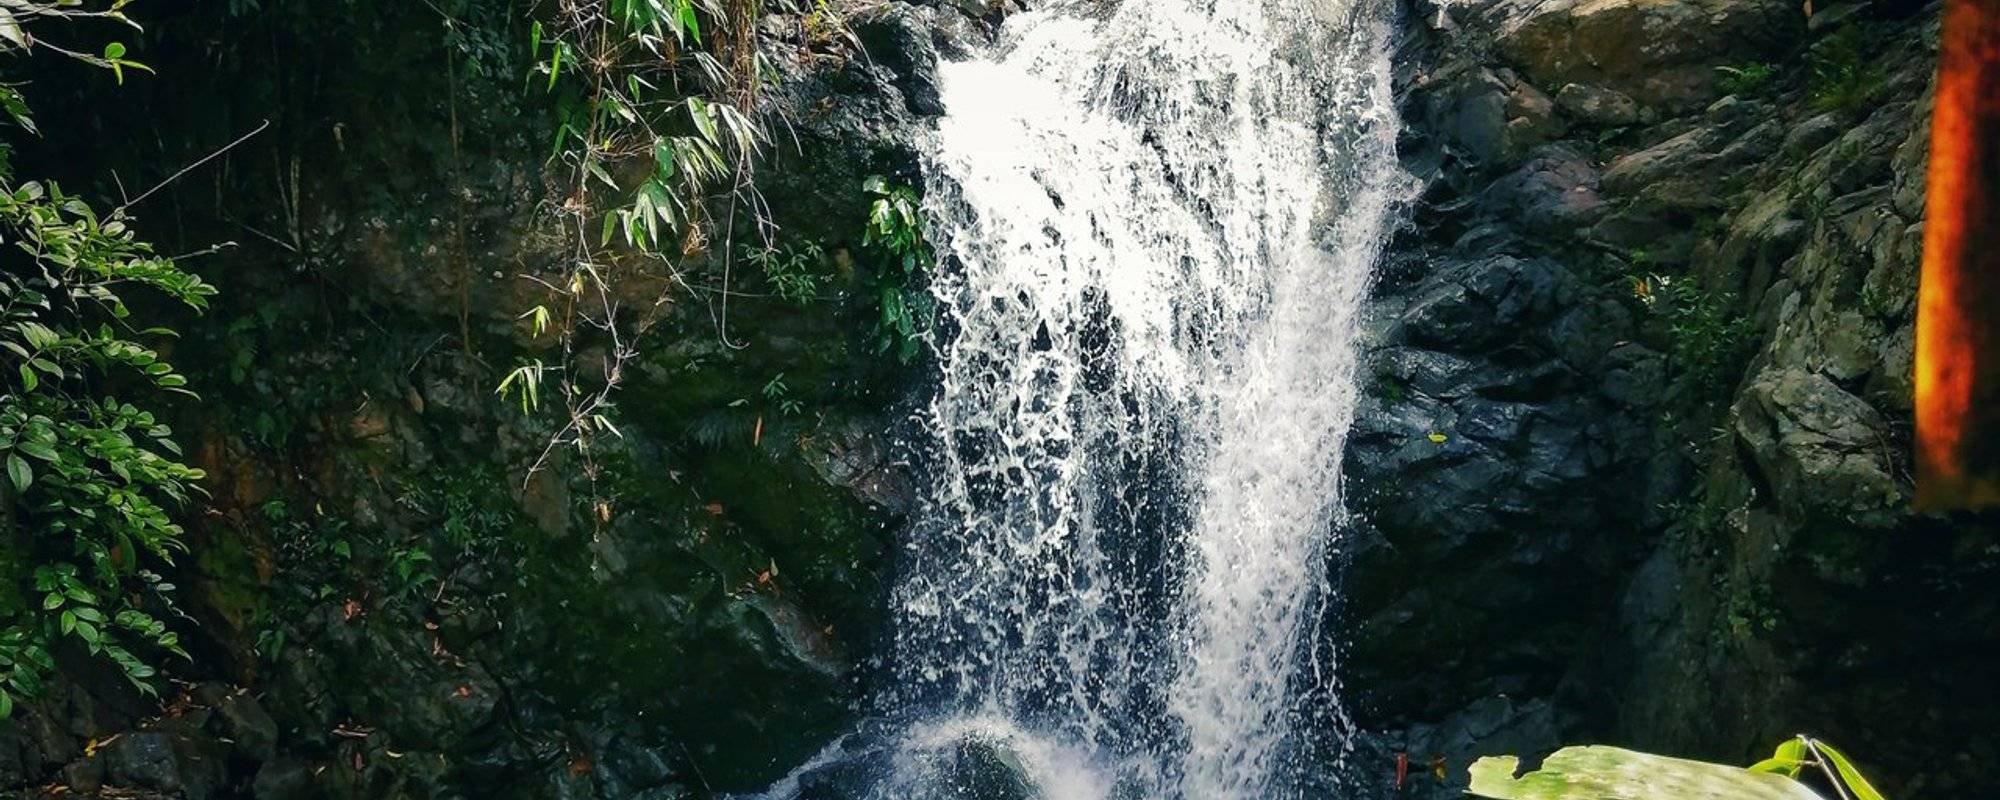 Binanga Falls at Shilan, La Trinidad, Benguet